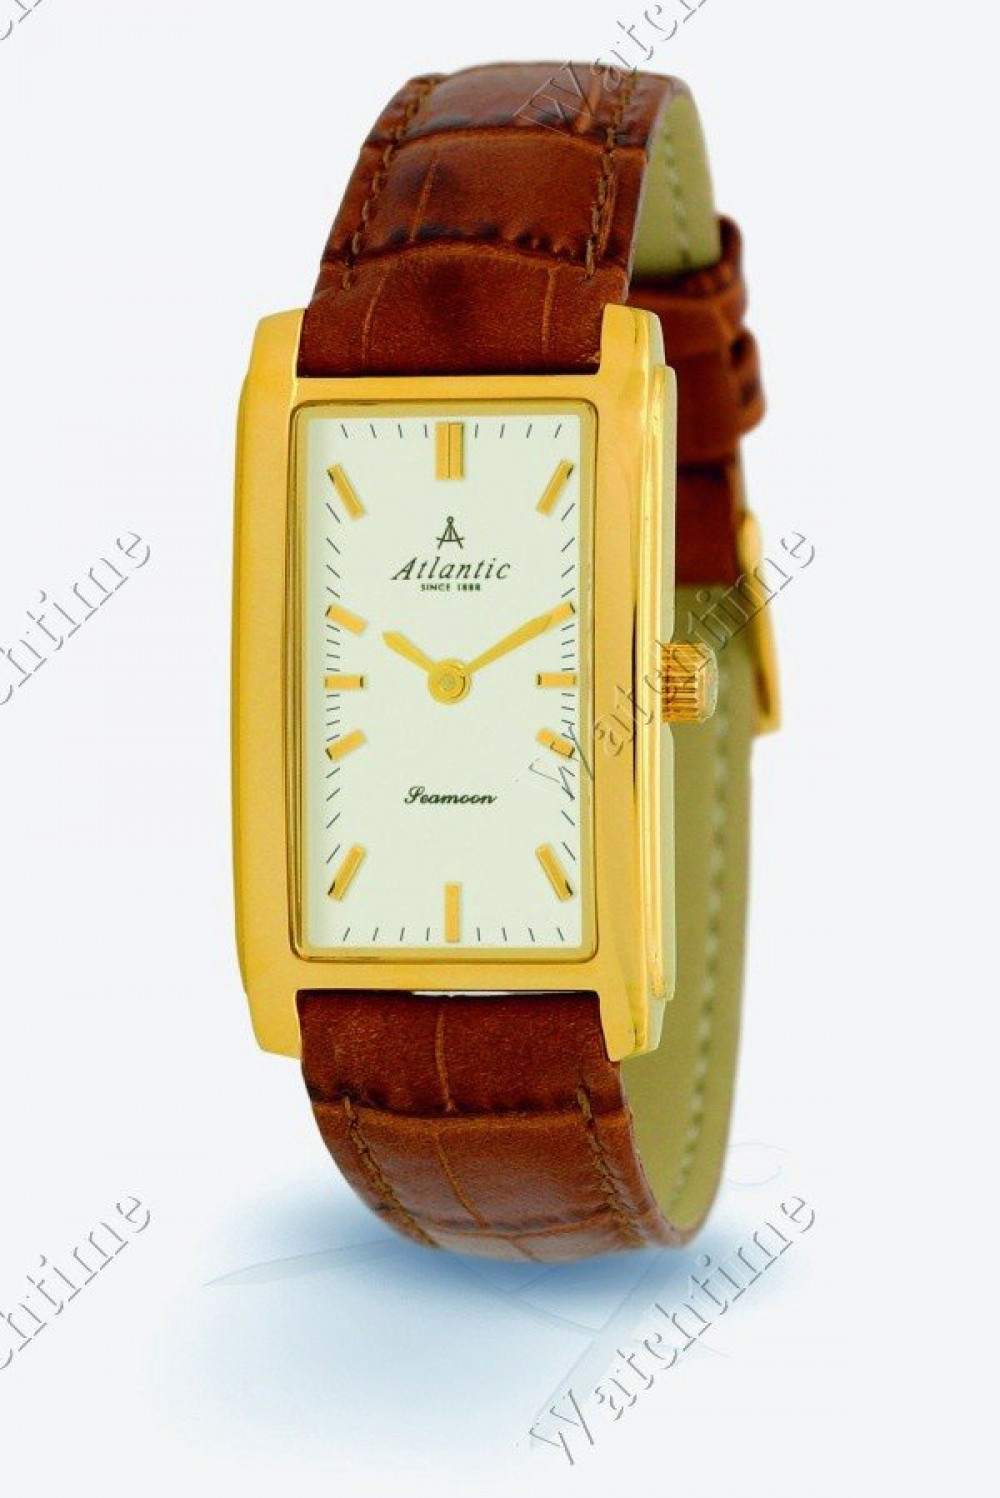 Zegarek firmy Atlantic, model Seamoon